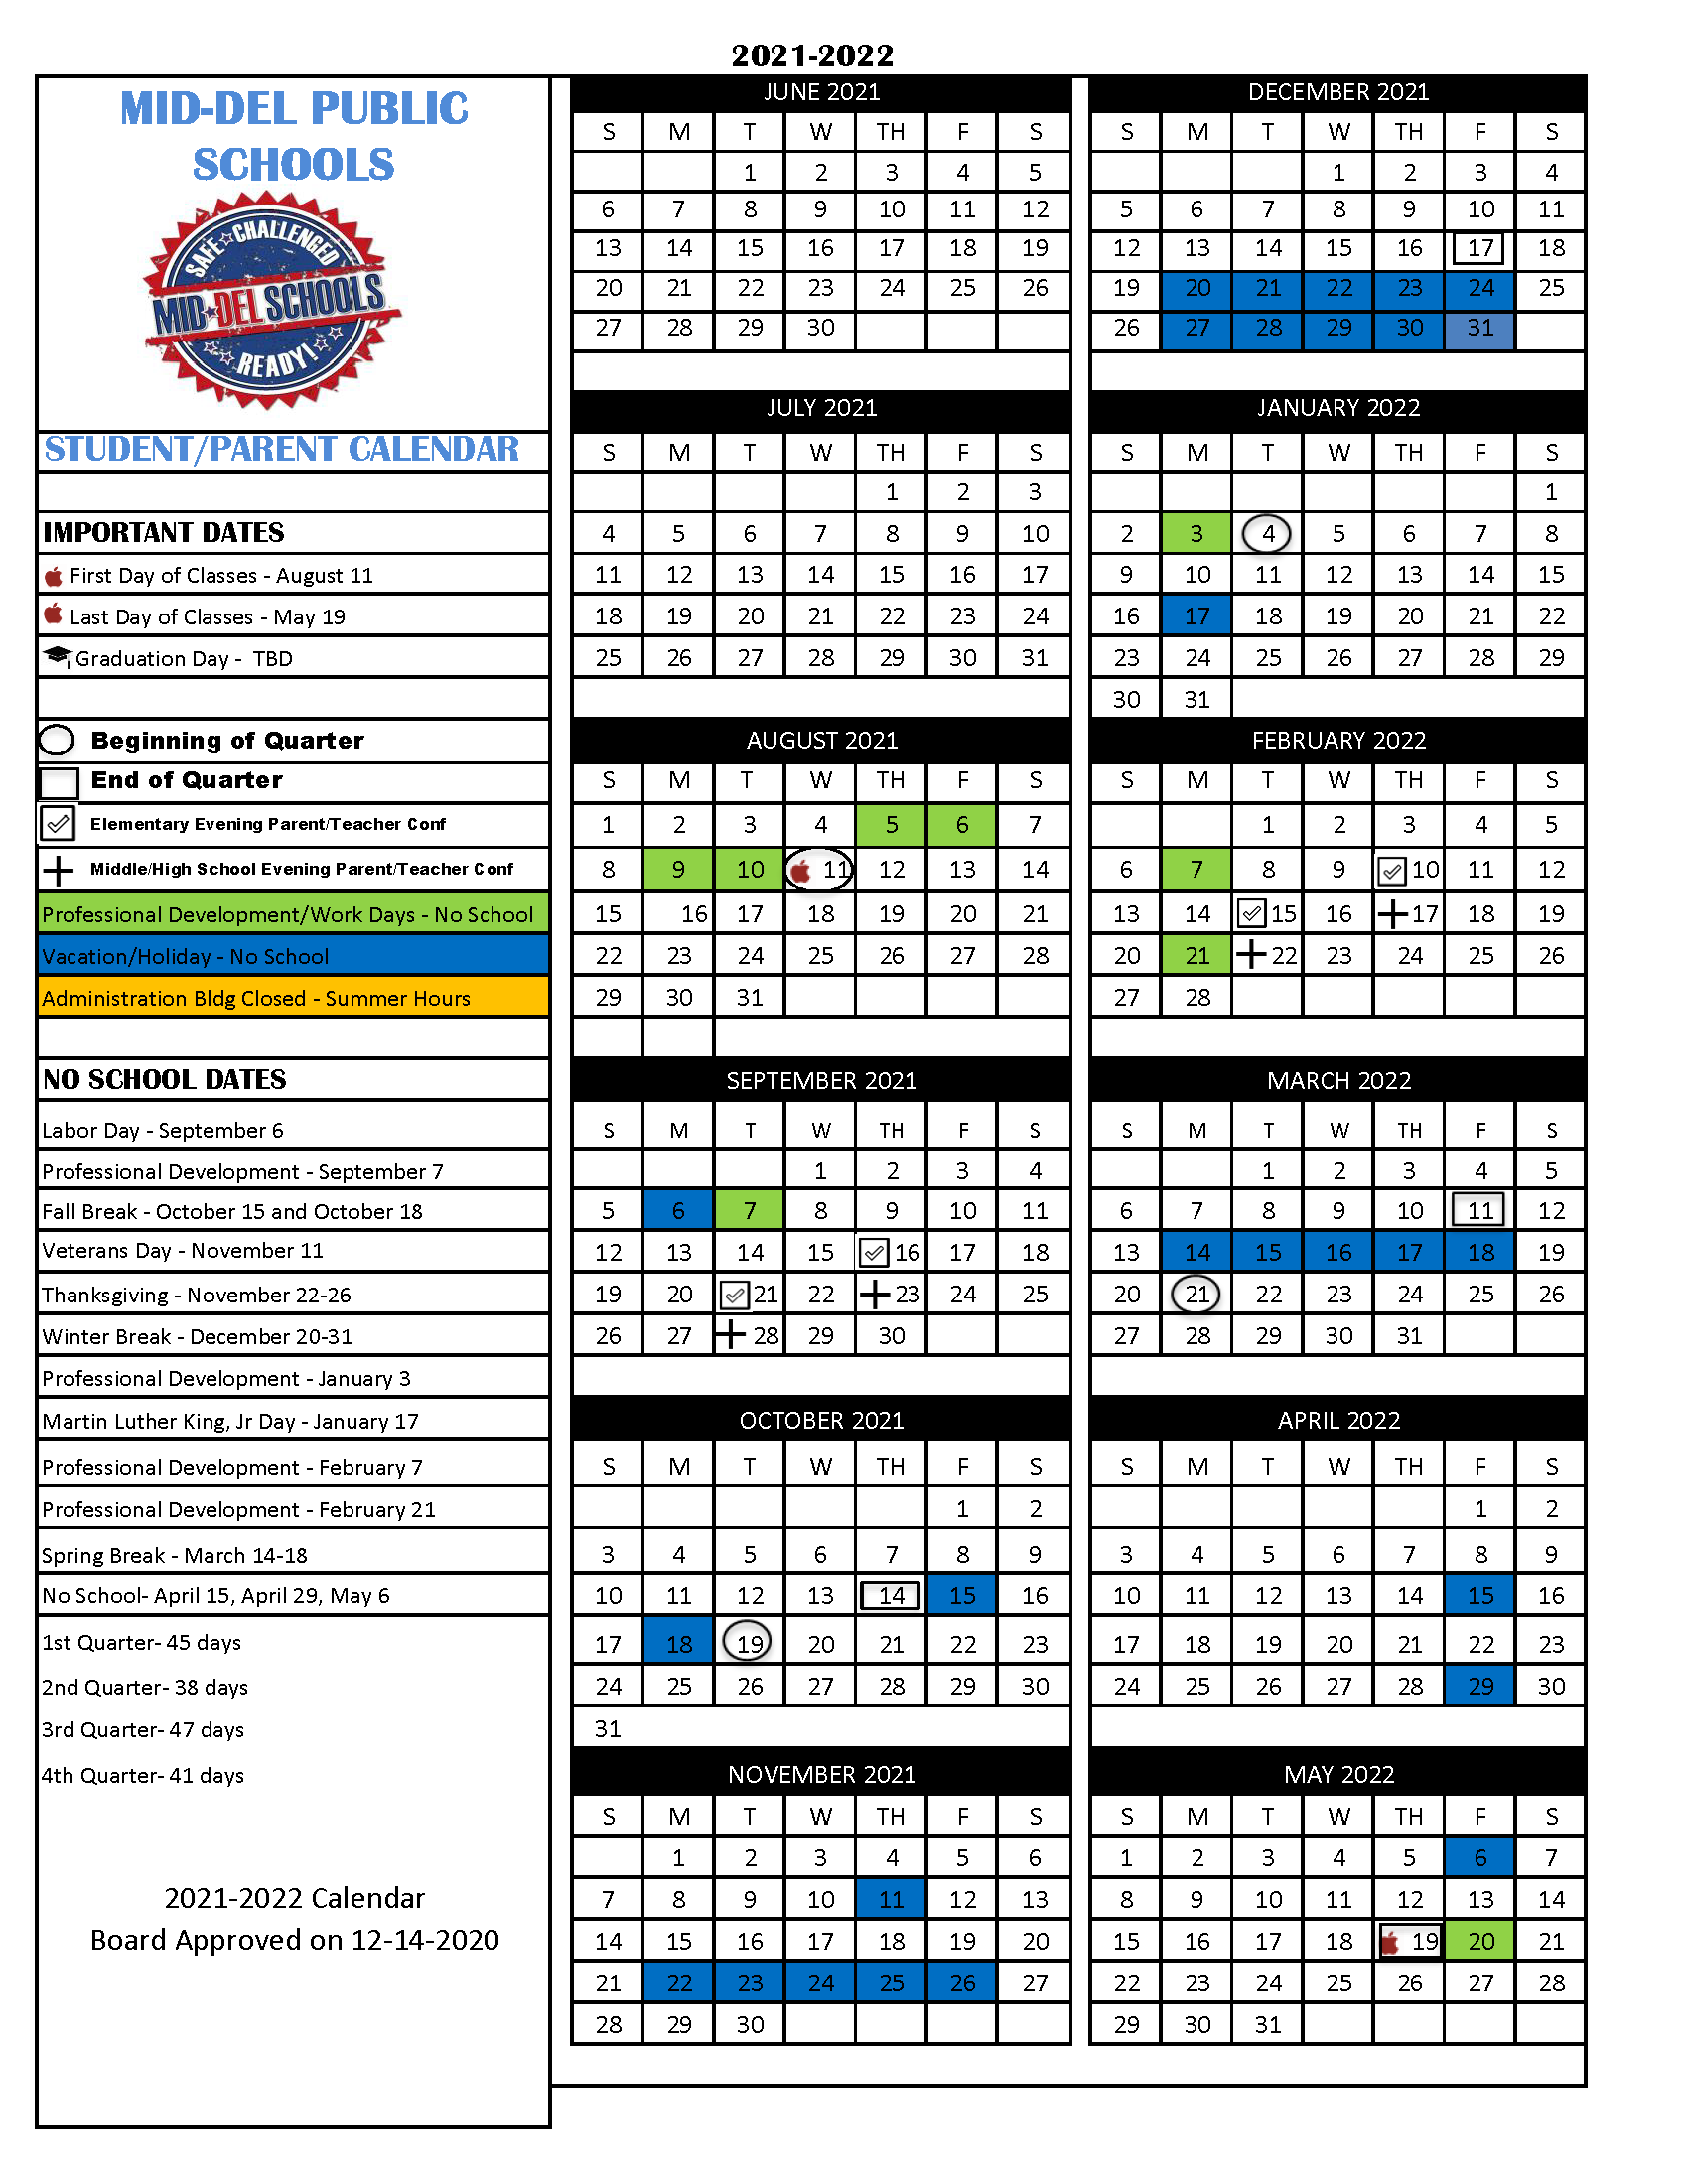 City Tech Spring 2022 Calendar 2021-2022 School Calendar | Mid-Del School District